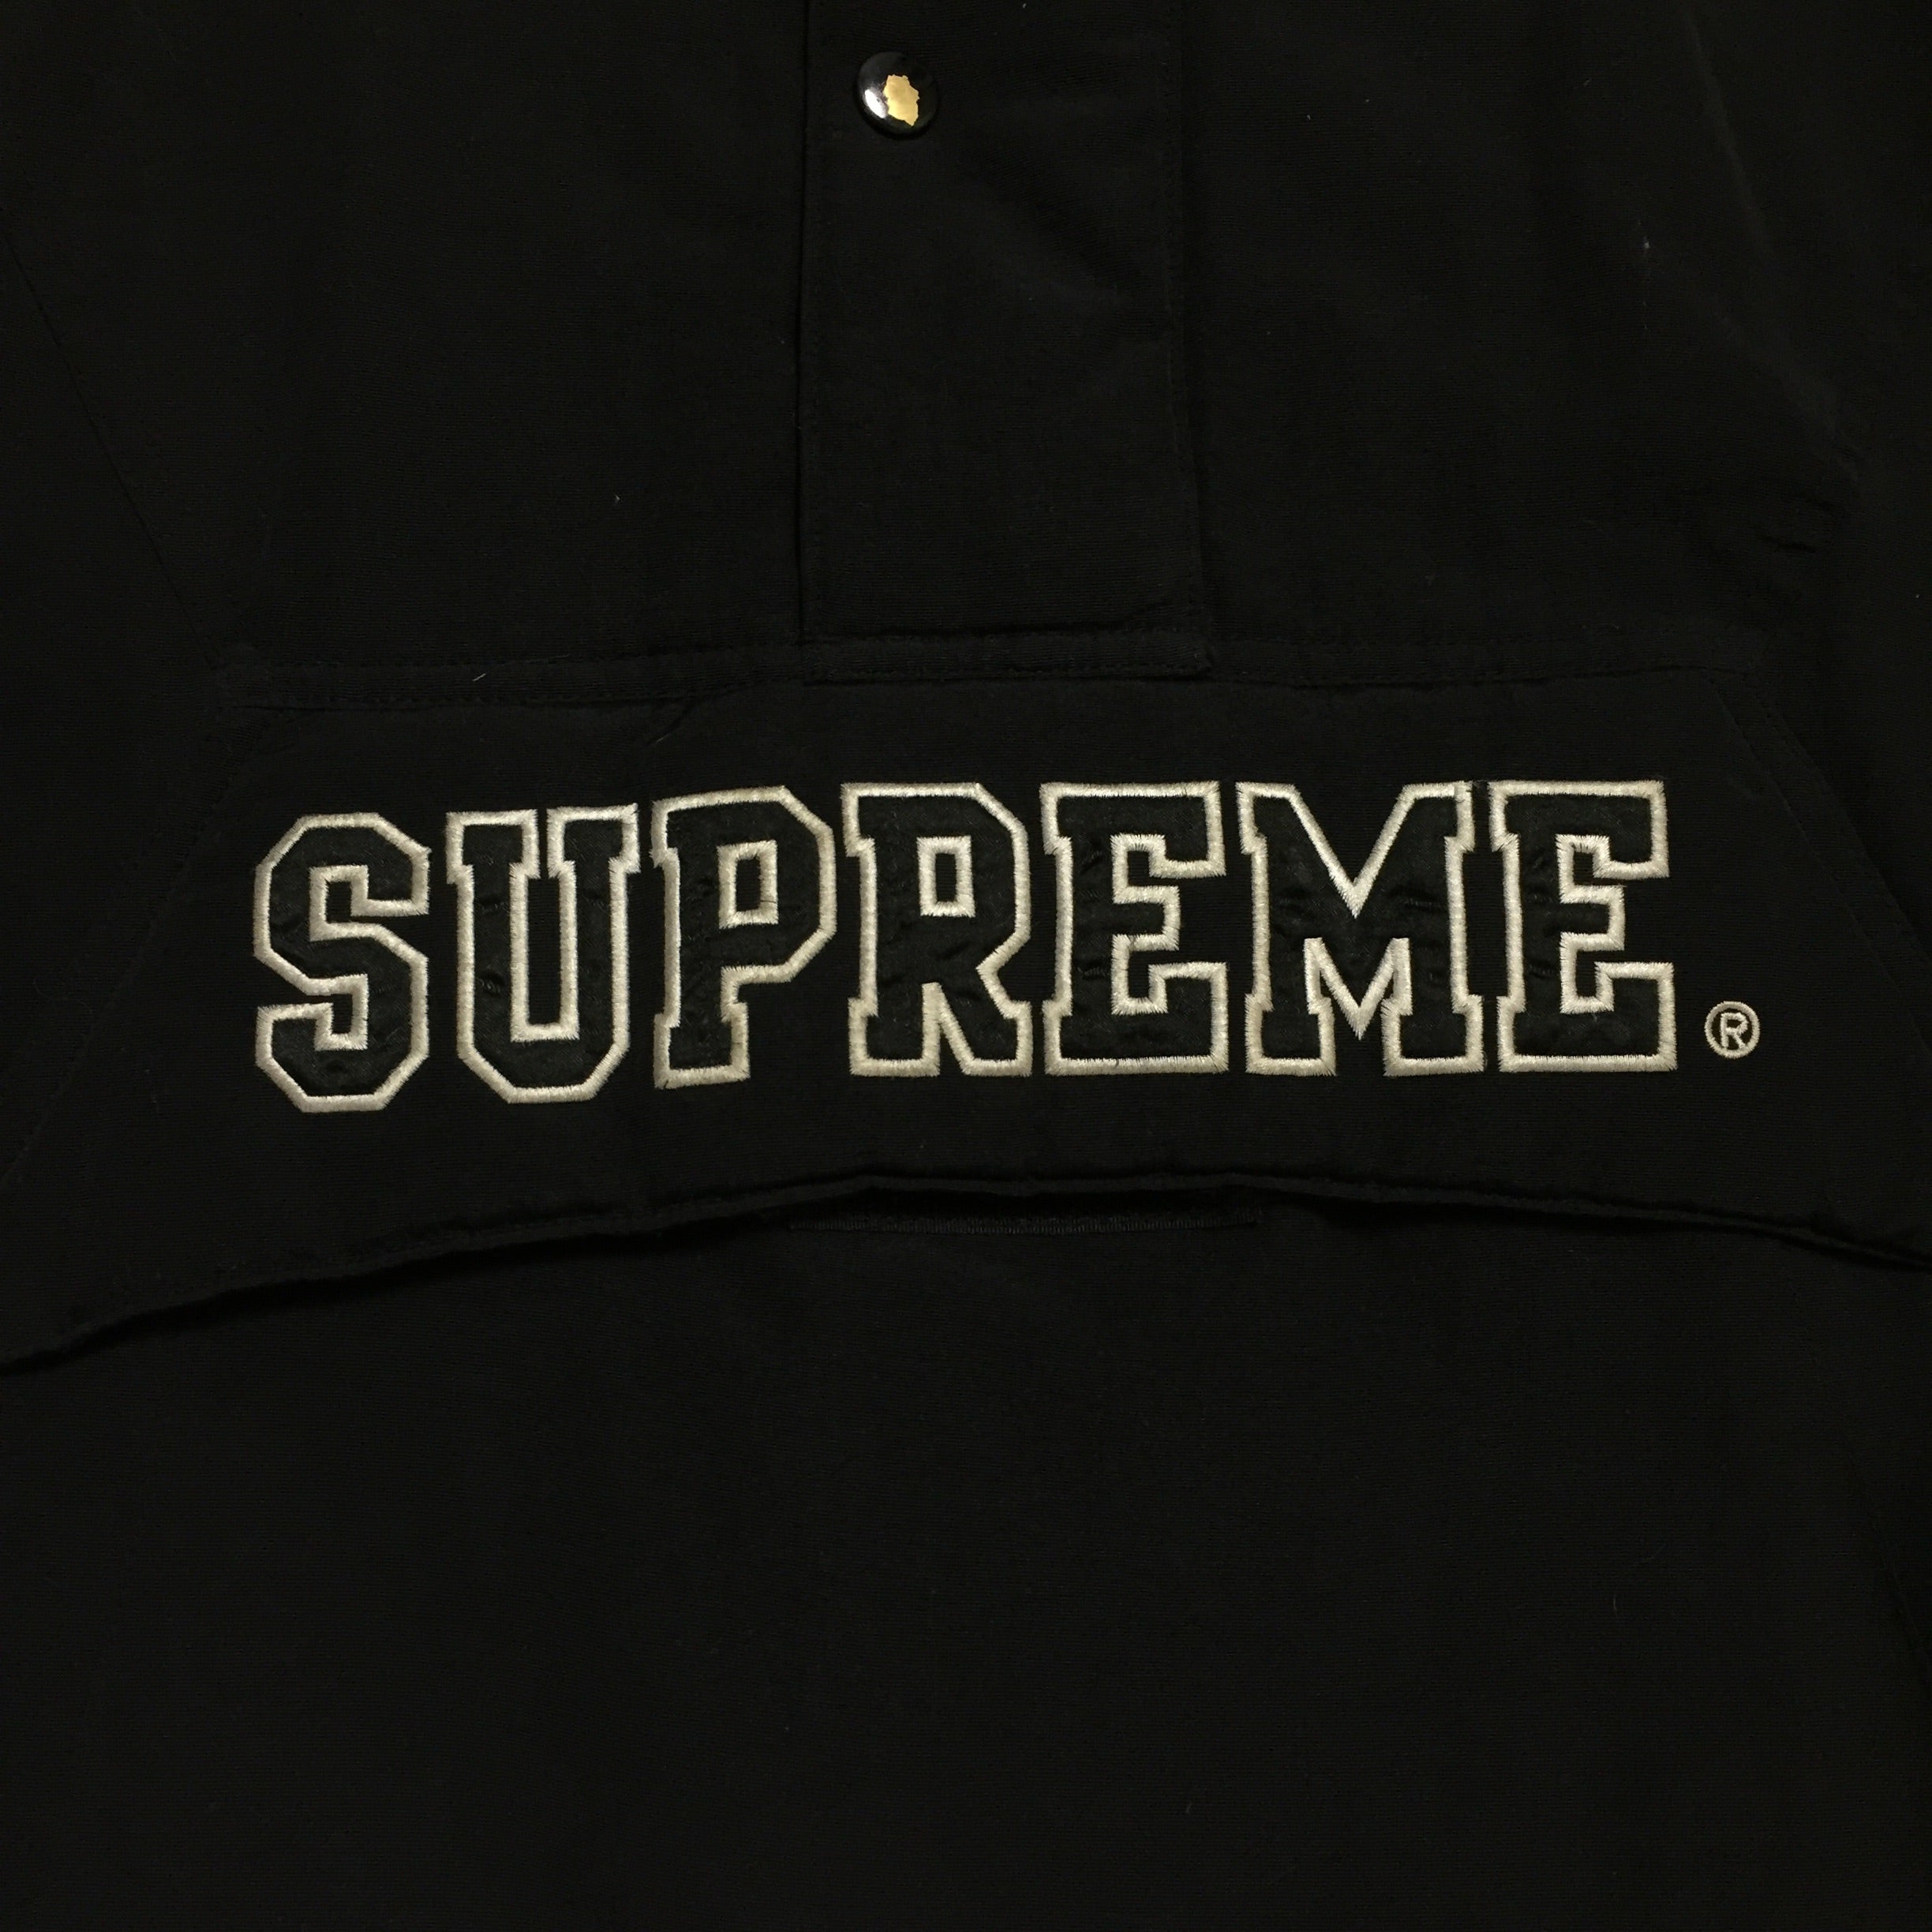 2006 Supreme x Public Enemy Black Starter Pullover Jacket